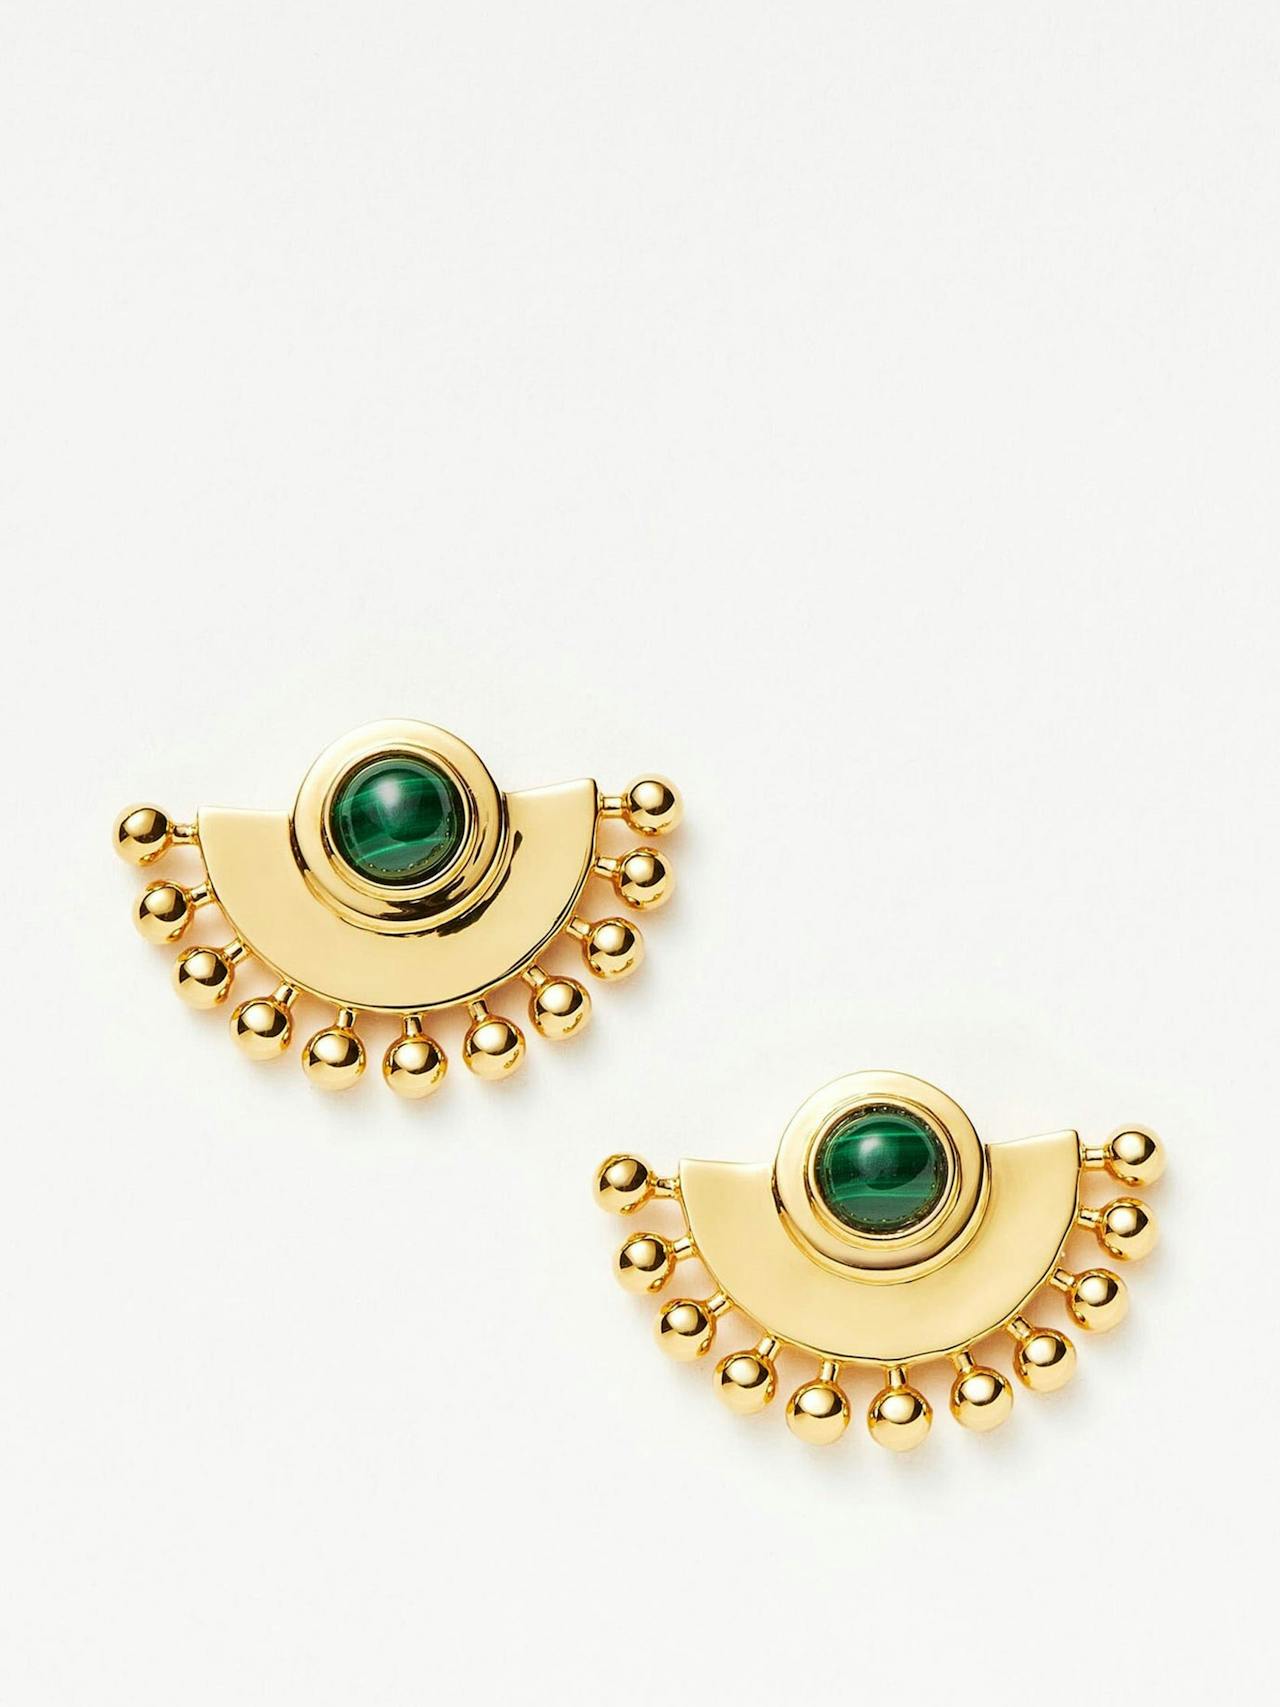 Zenyu fan gemstone stud earrings